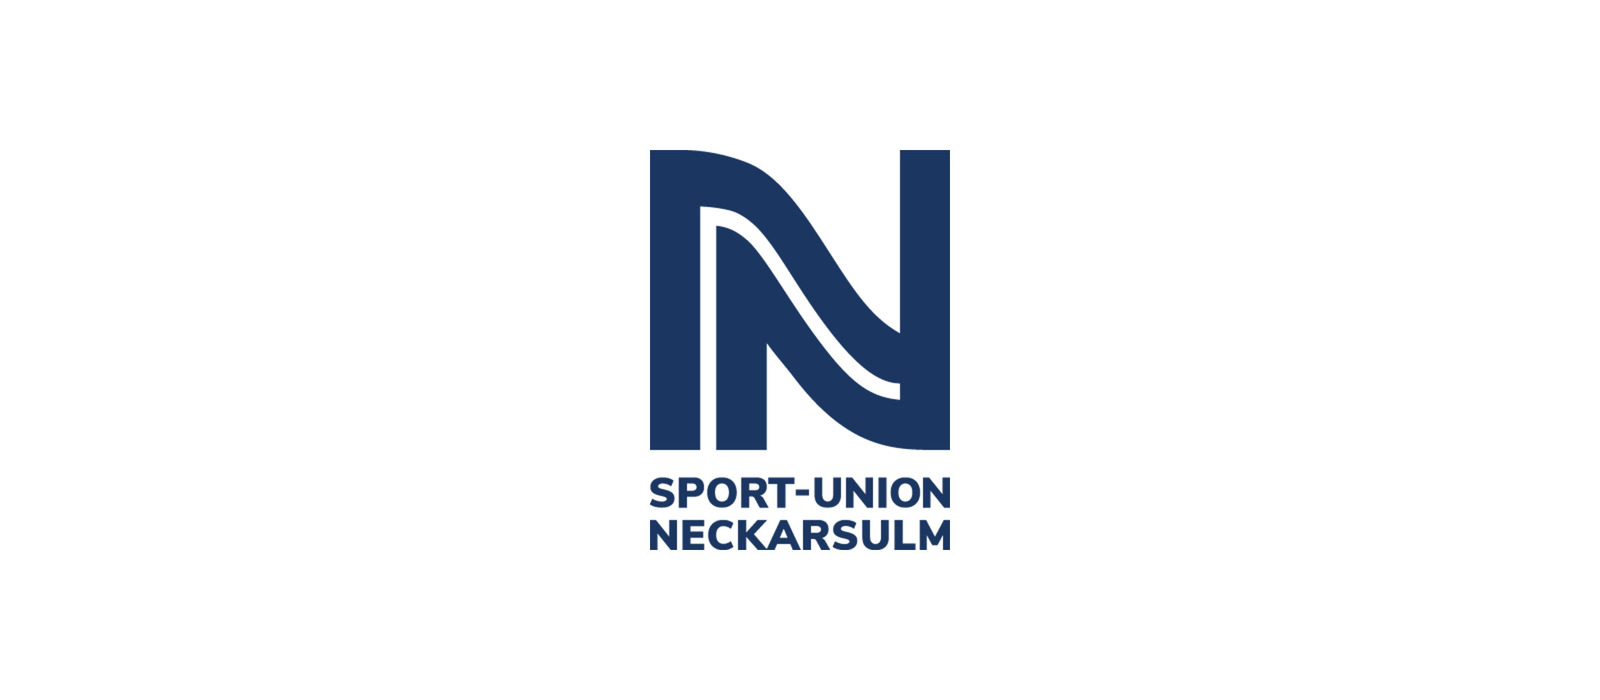 Sport-Union Neckarsulm vs SG BBM Bietigheim